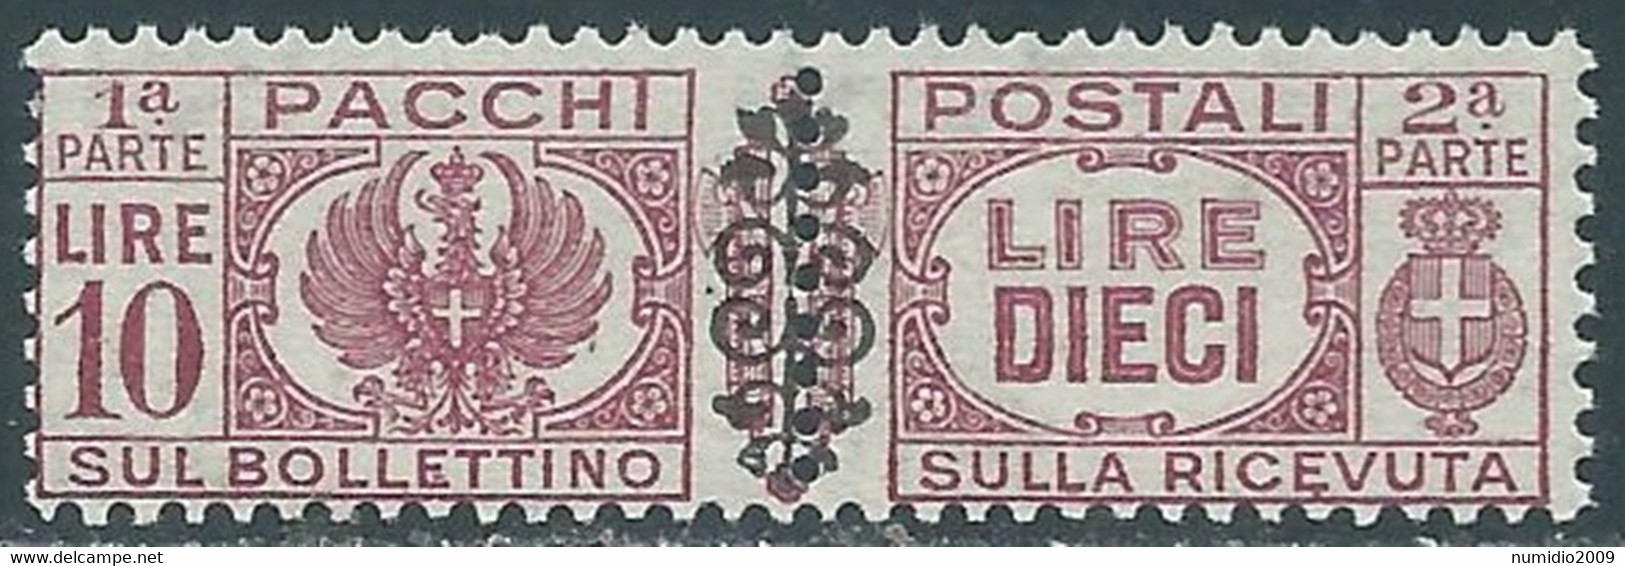 1945 LUOGOTENENZA PACCHI POSTALI 10 LIRE MNH ** - RB14-2 - Paketmarken